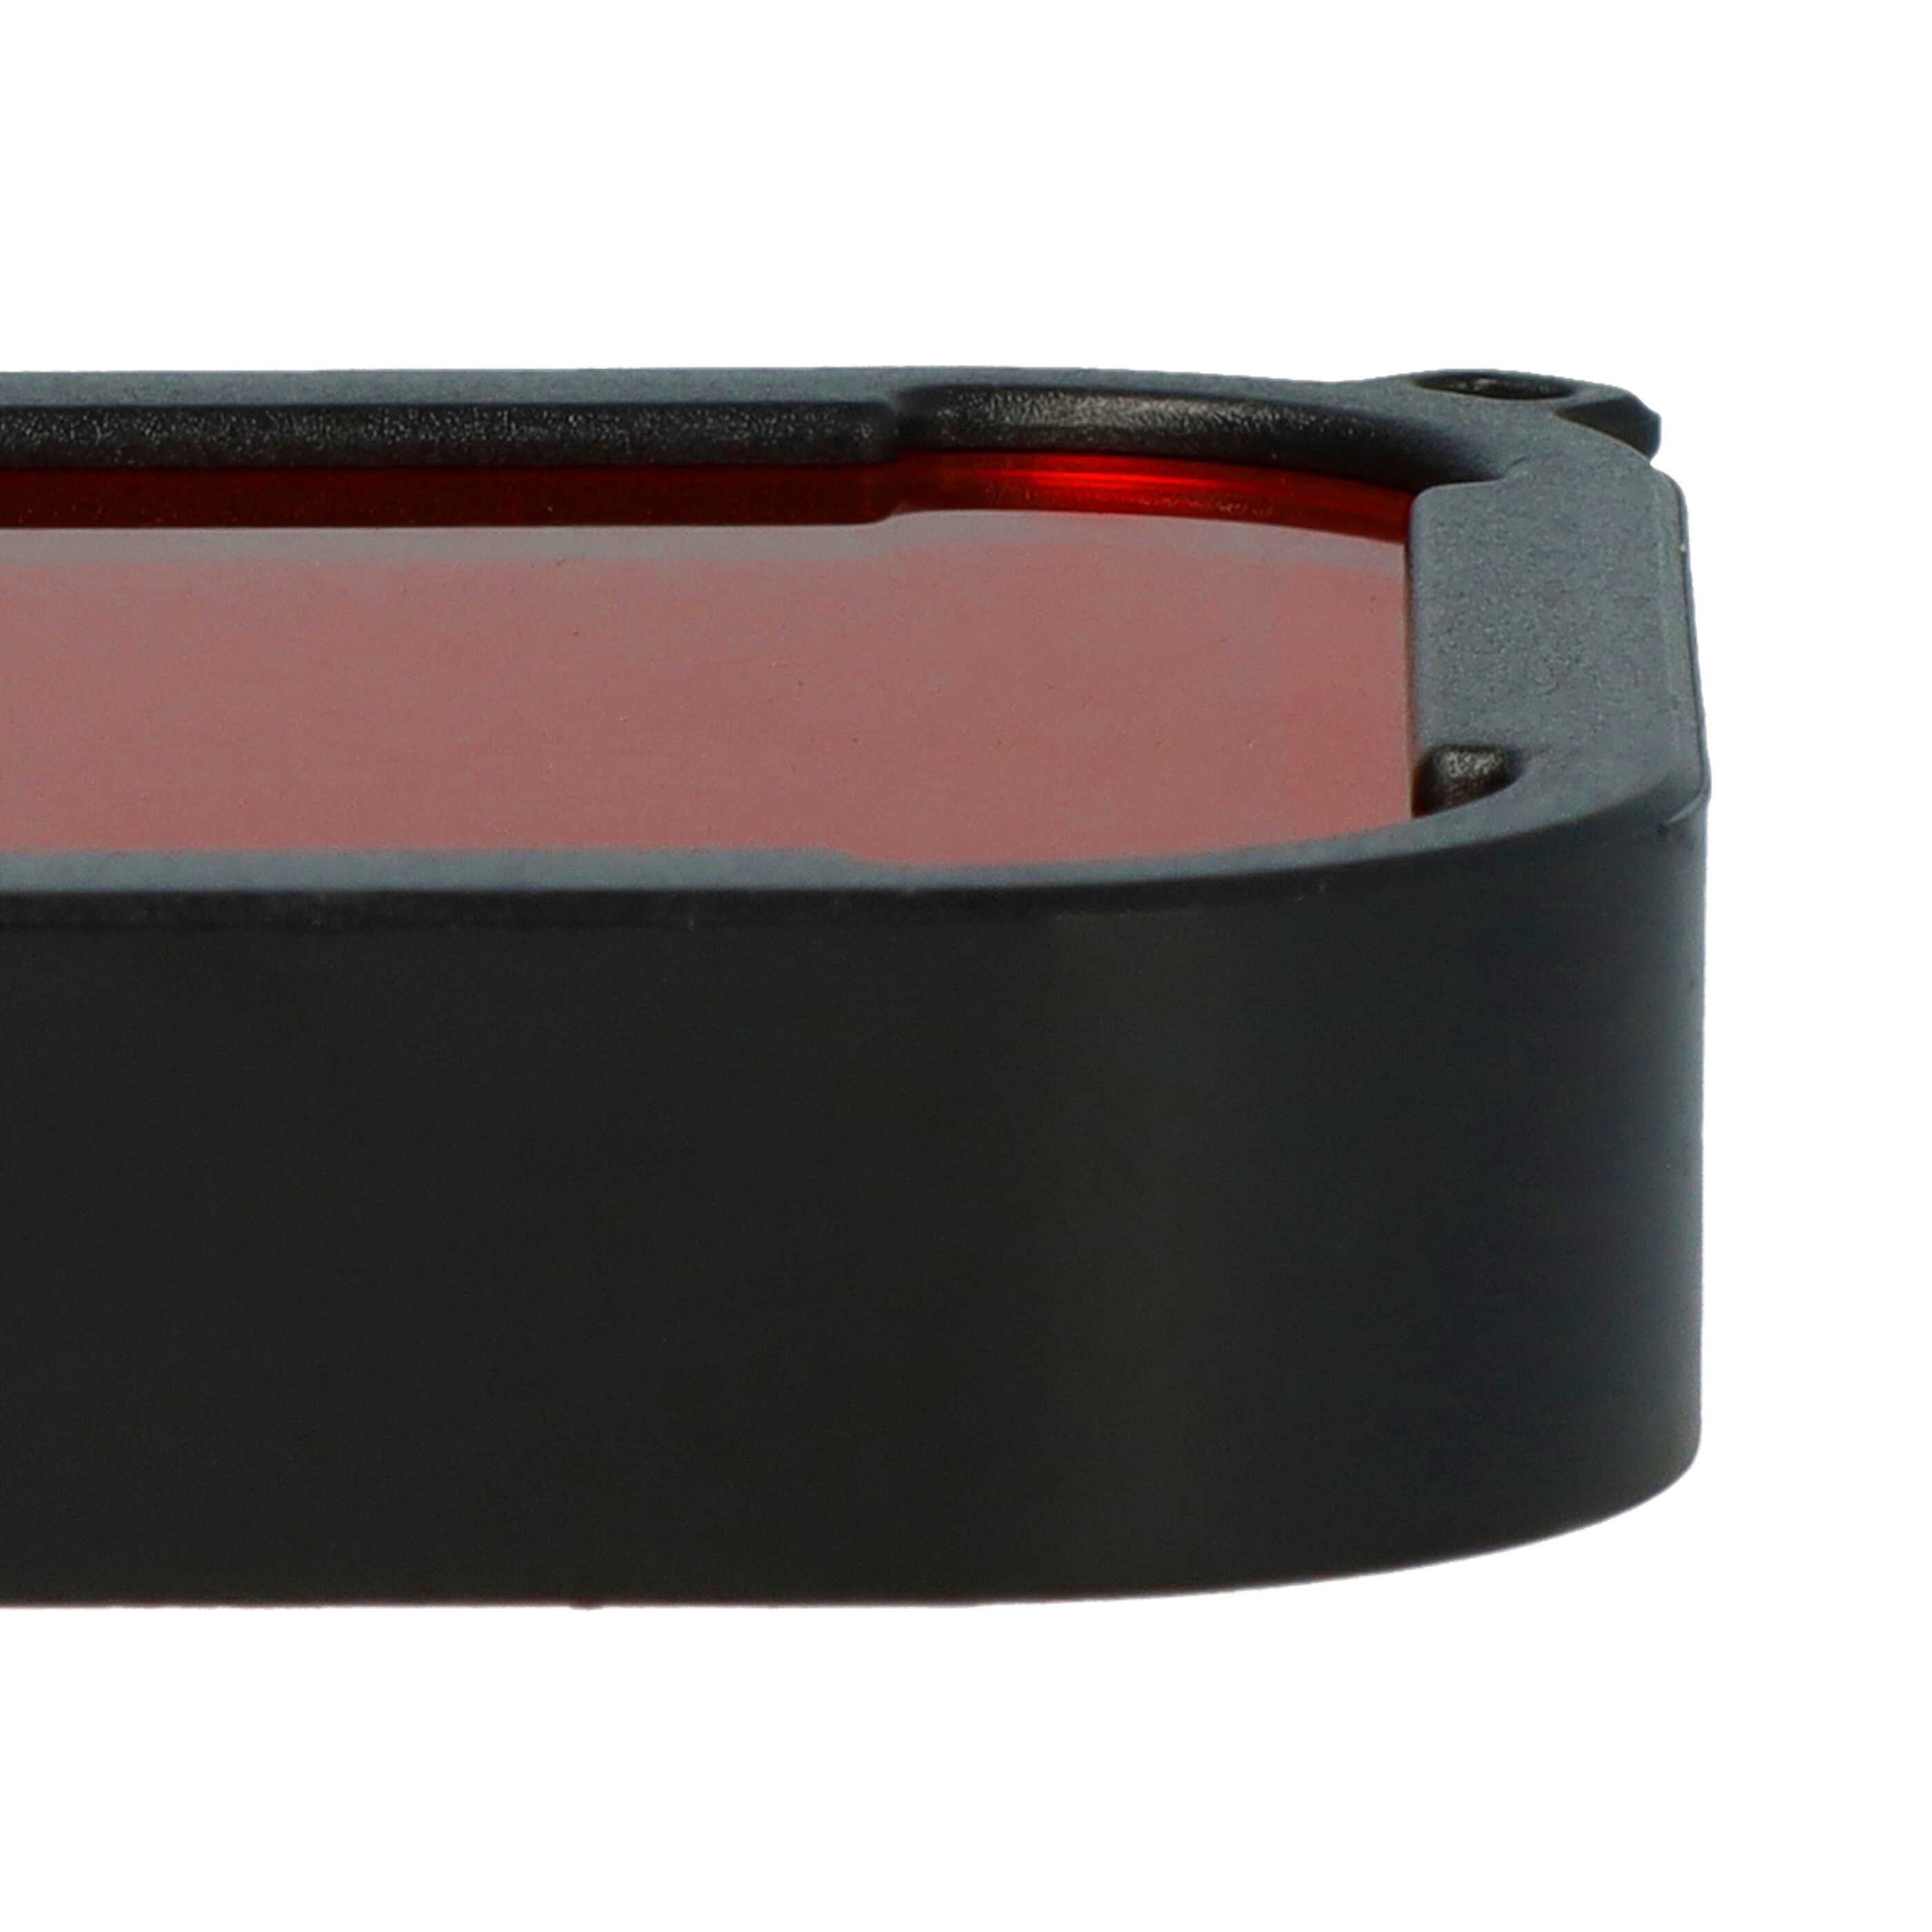 Filtro de lente subacuático para la carcasa subacuática de cámara de acción GoPro Hero 5, 6 - WEITERE INFOS